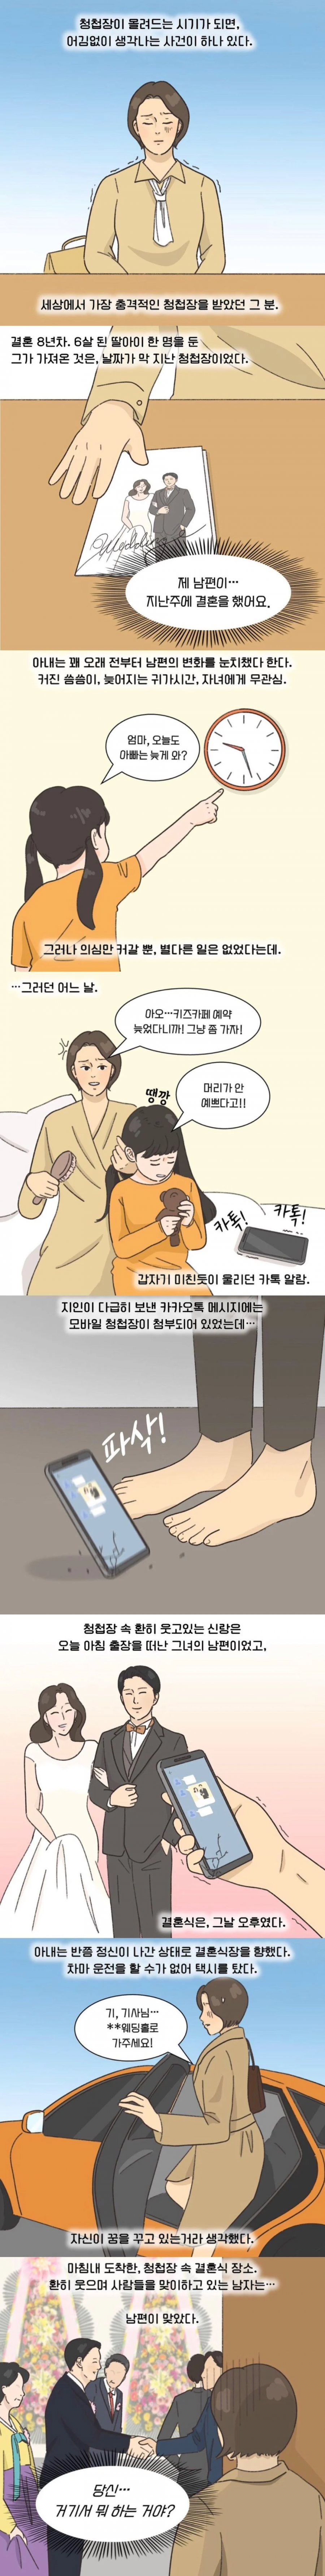 3 이혼웹툰- 세상에서 제일 충격적인 청첩장 (3)